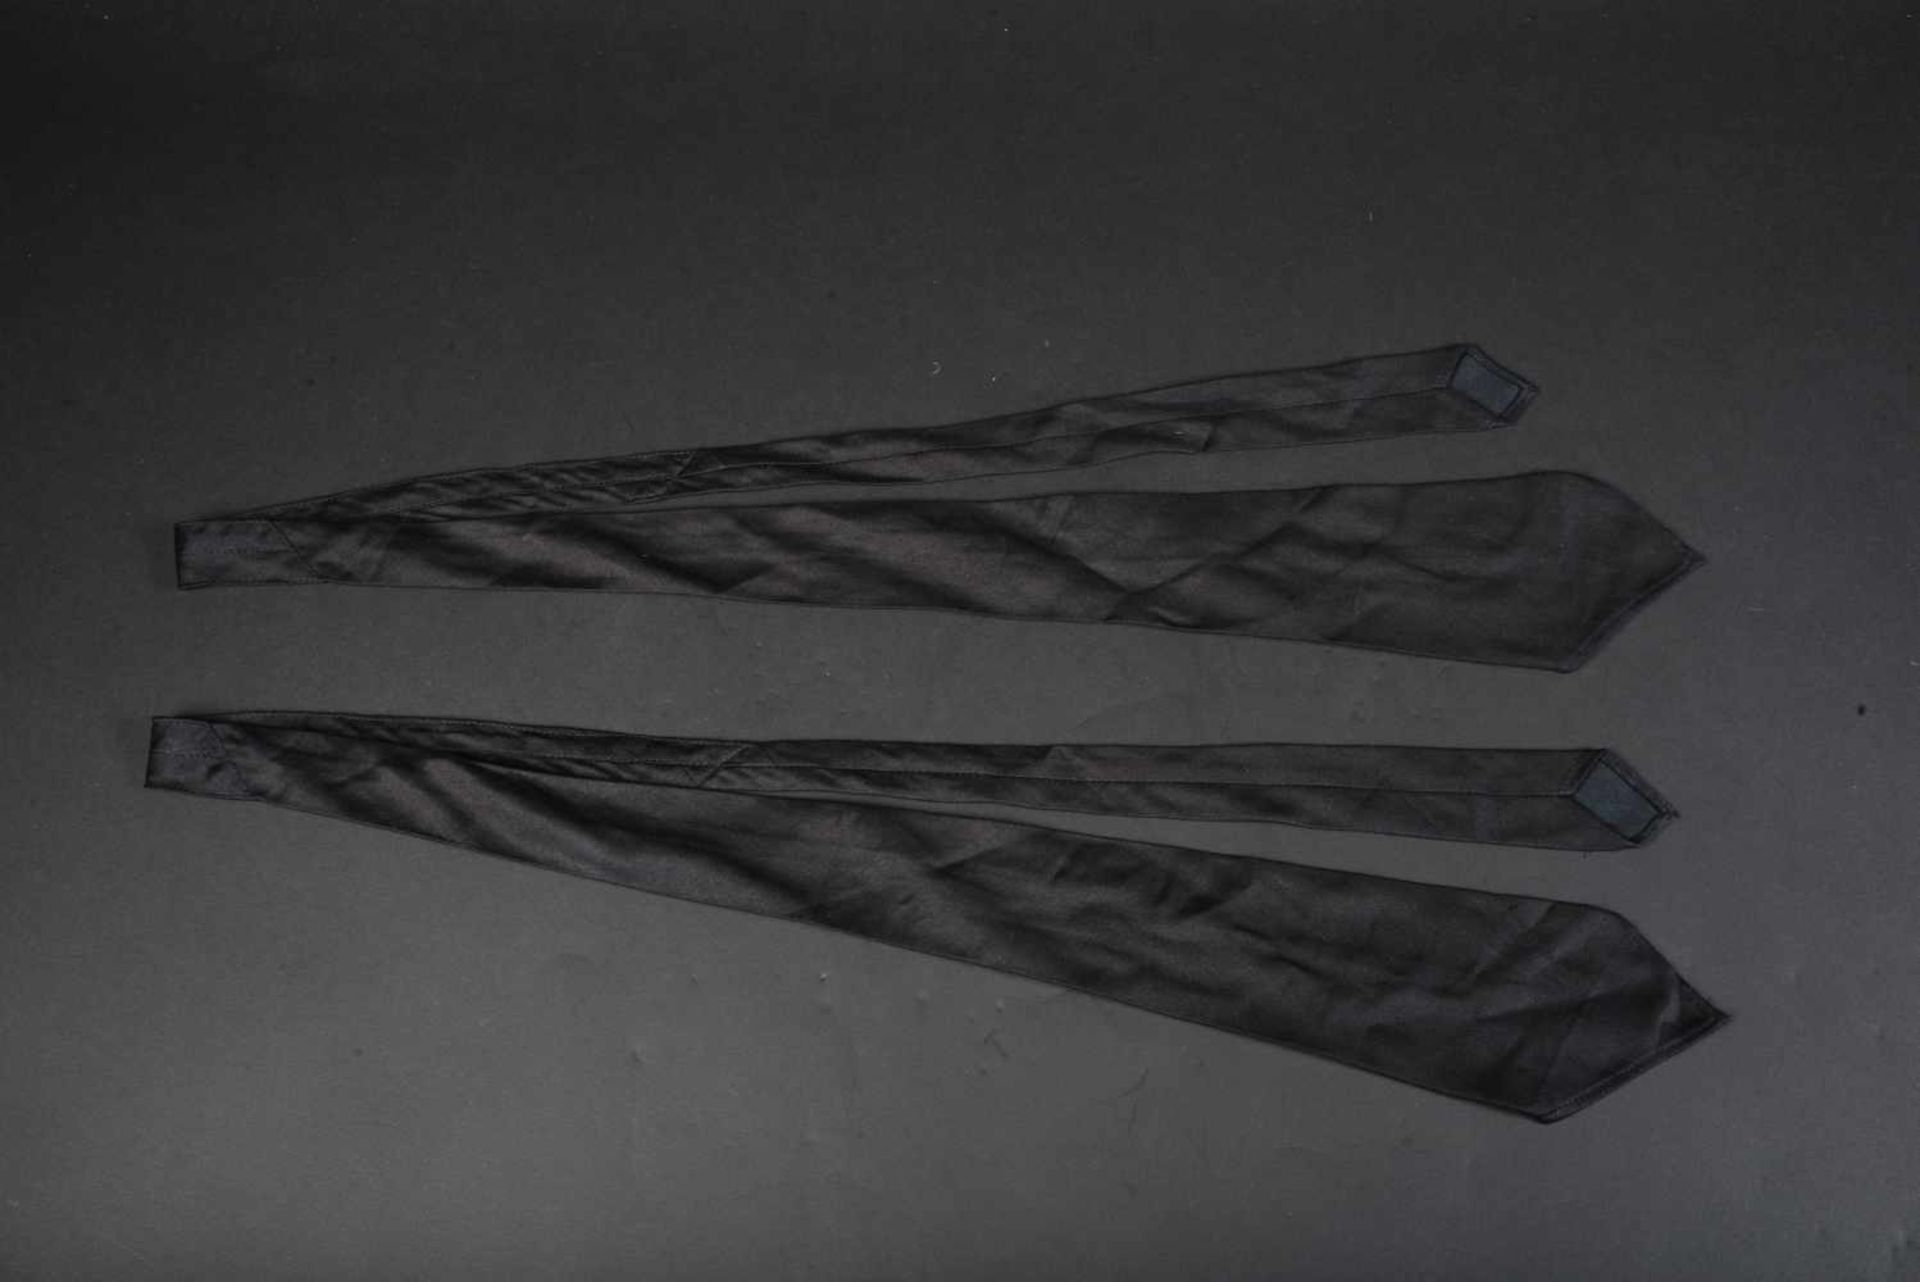 Cravates de la Heer En tissu coton noir, datées 1942. Photos supplémentaires sur www.aiolfi.com.